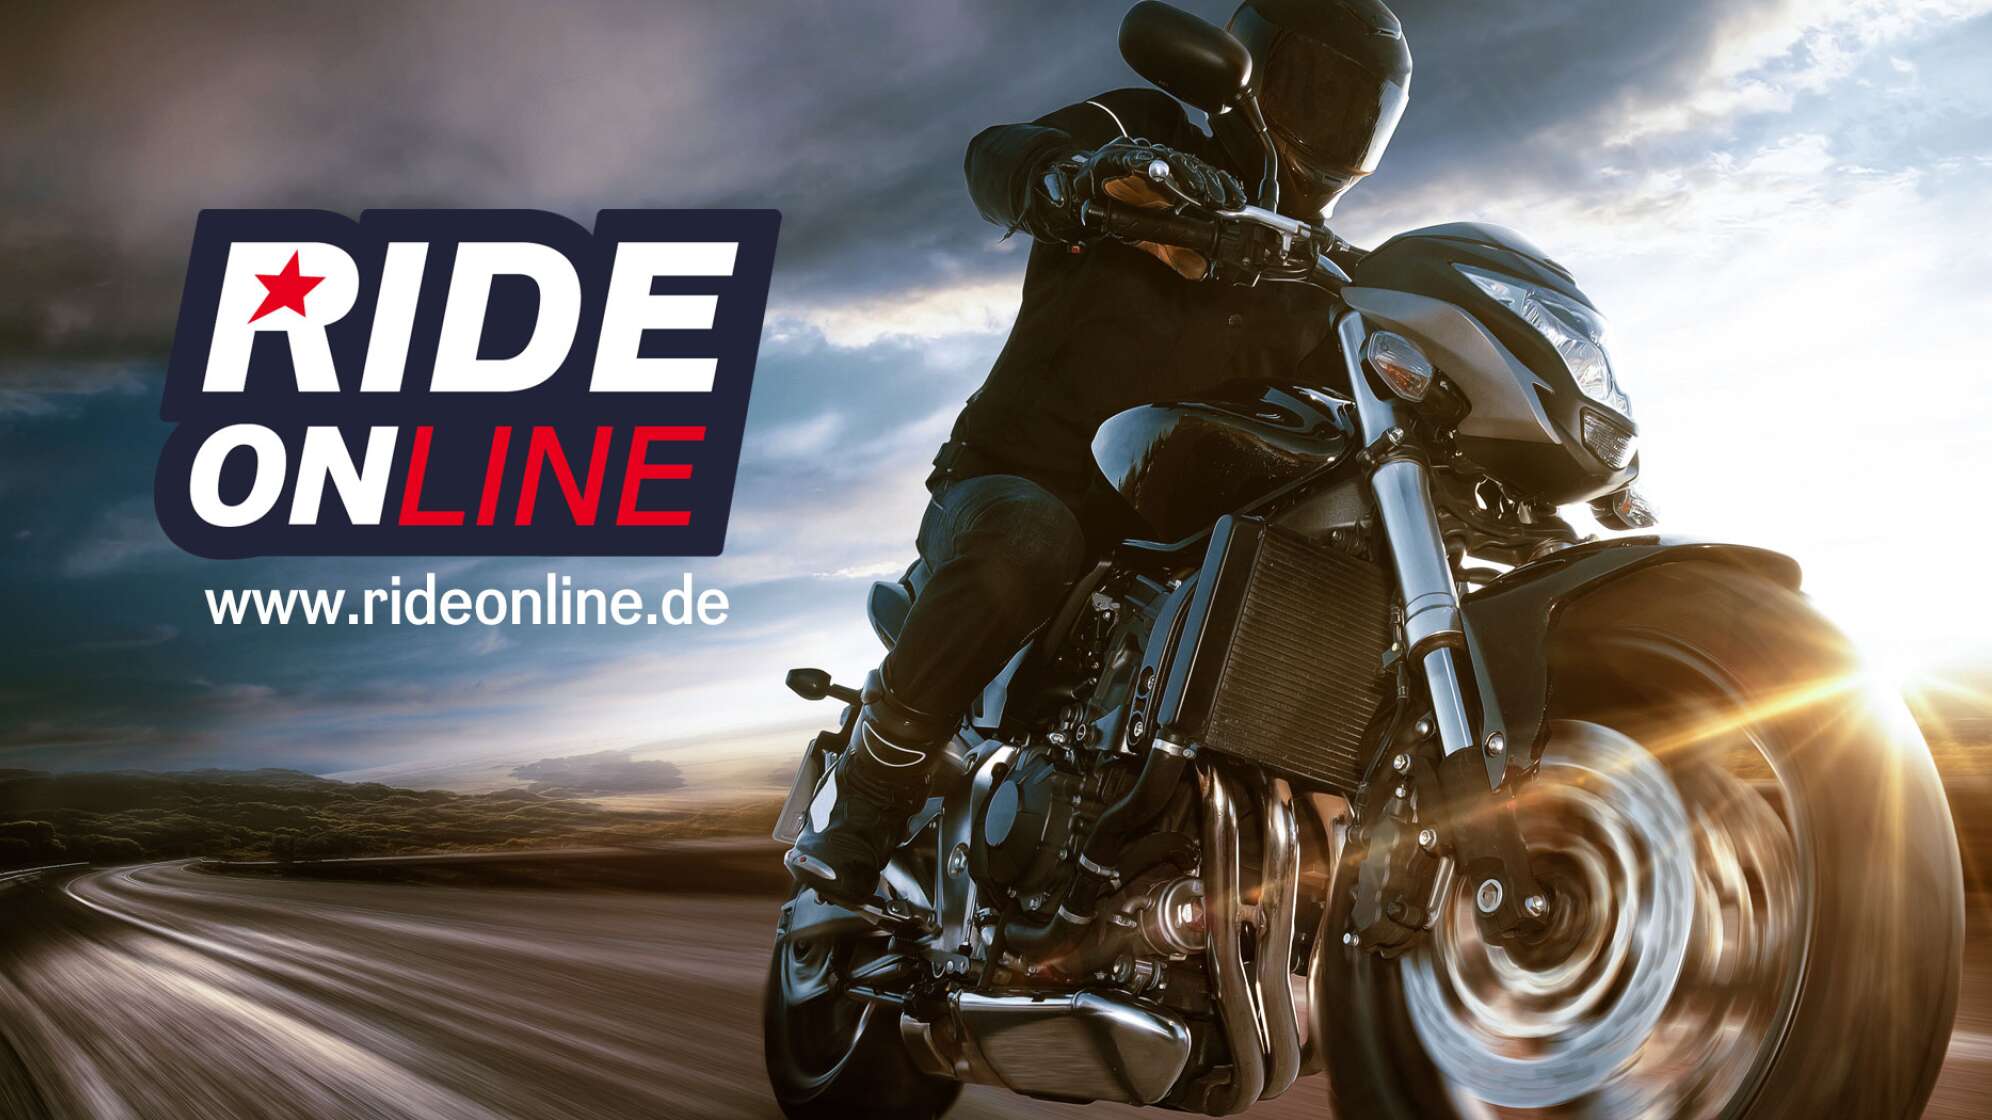 Ein Motorradfahrer auf einer Straße vor dunklen Wolken, mit dem Logo "RIDE ONline" und der Internetadresse www.rideonline.de